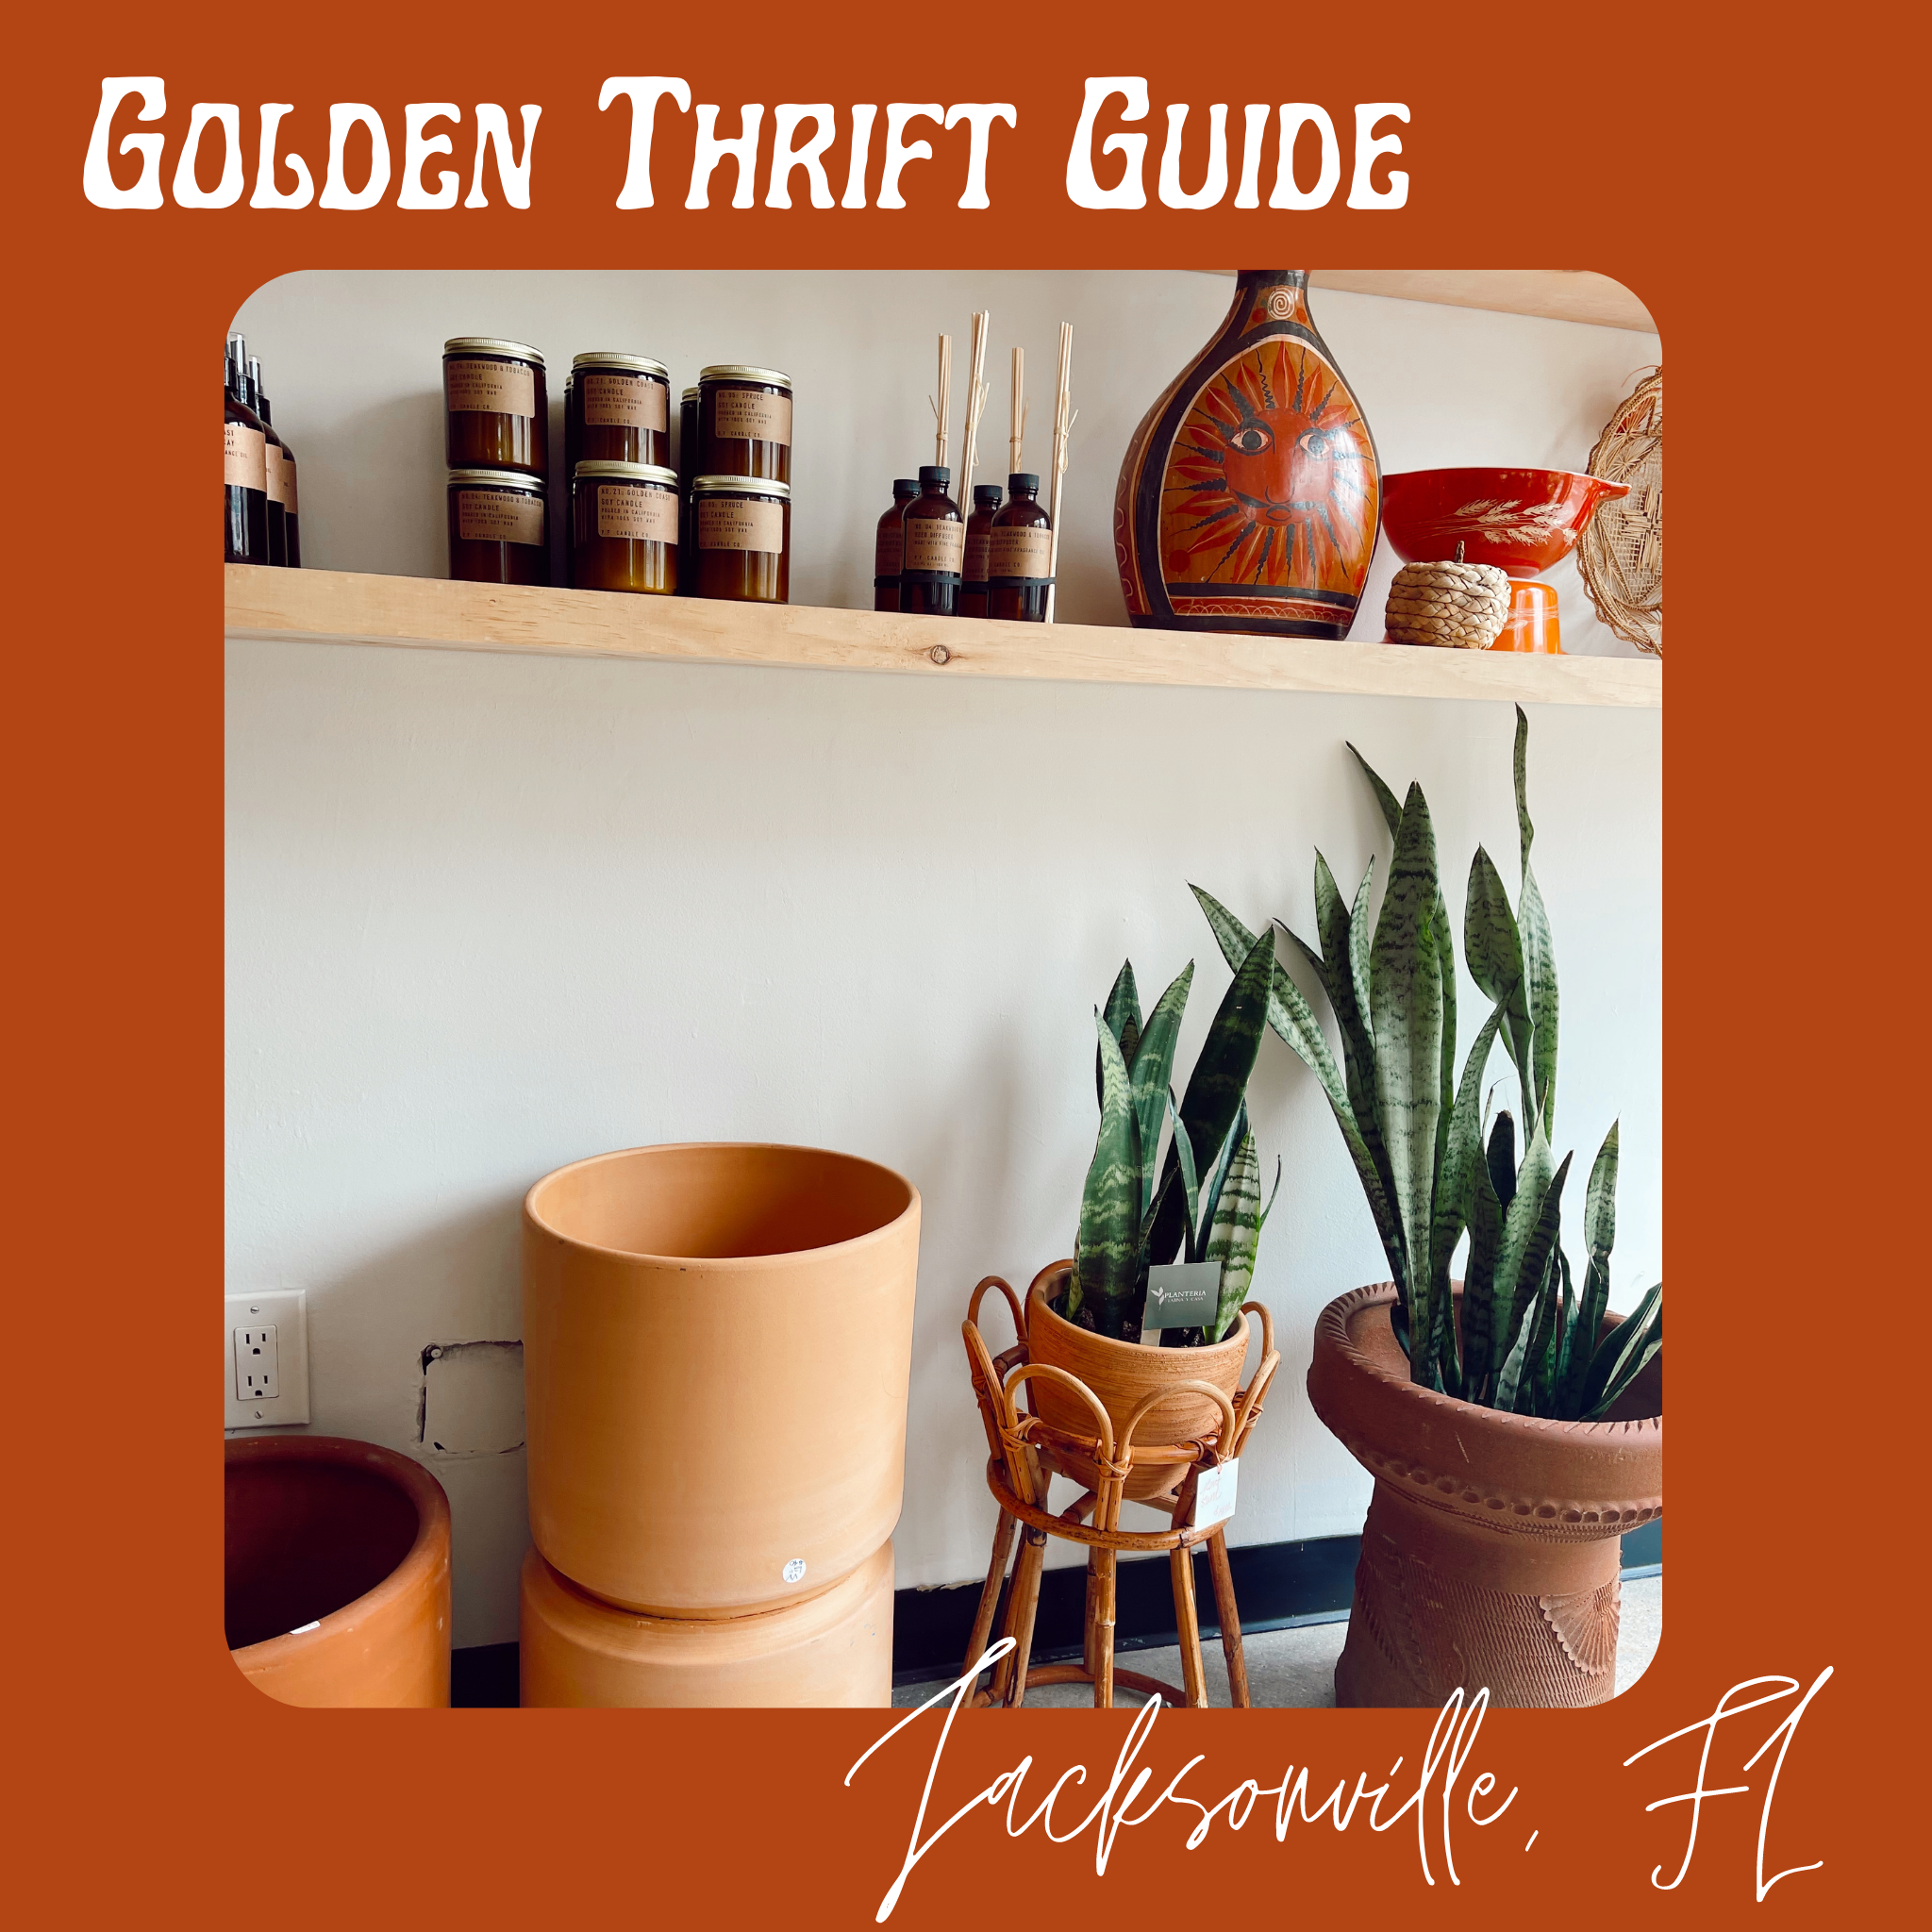 Golden Thrift Guide - Jacksonville, FL